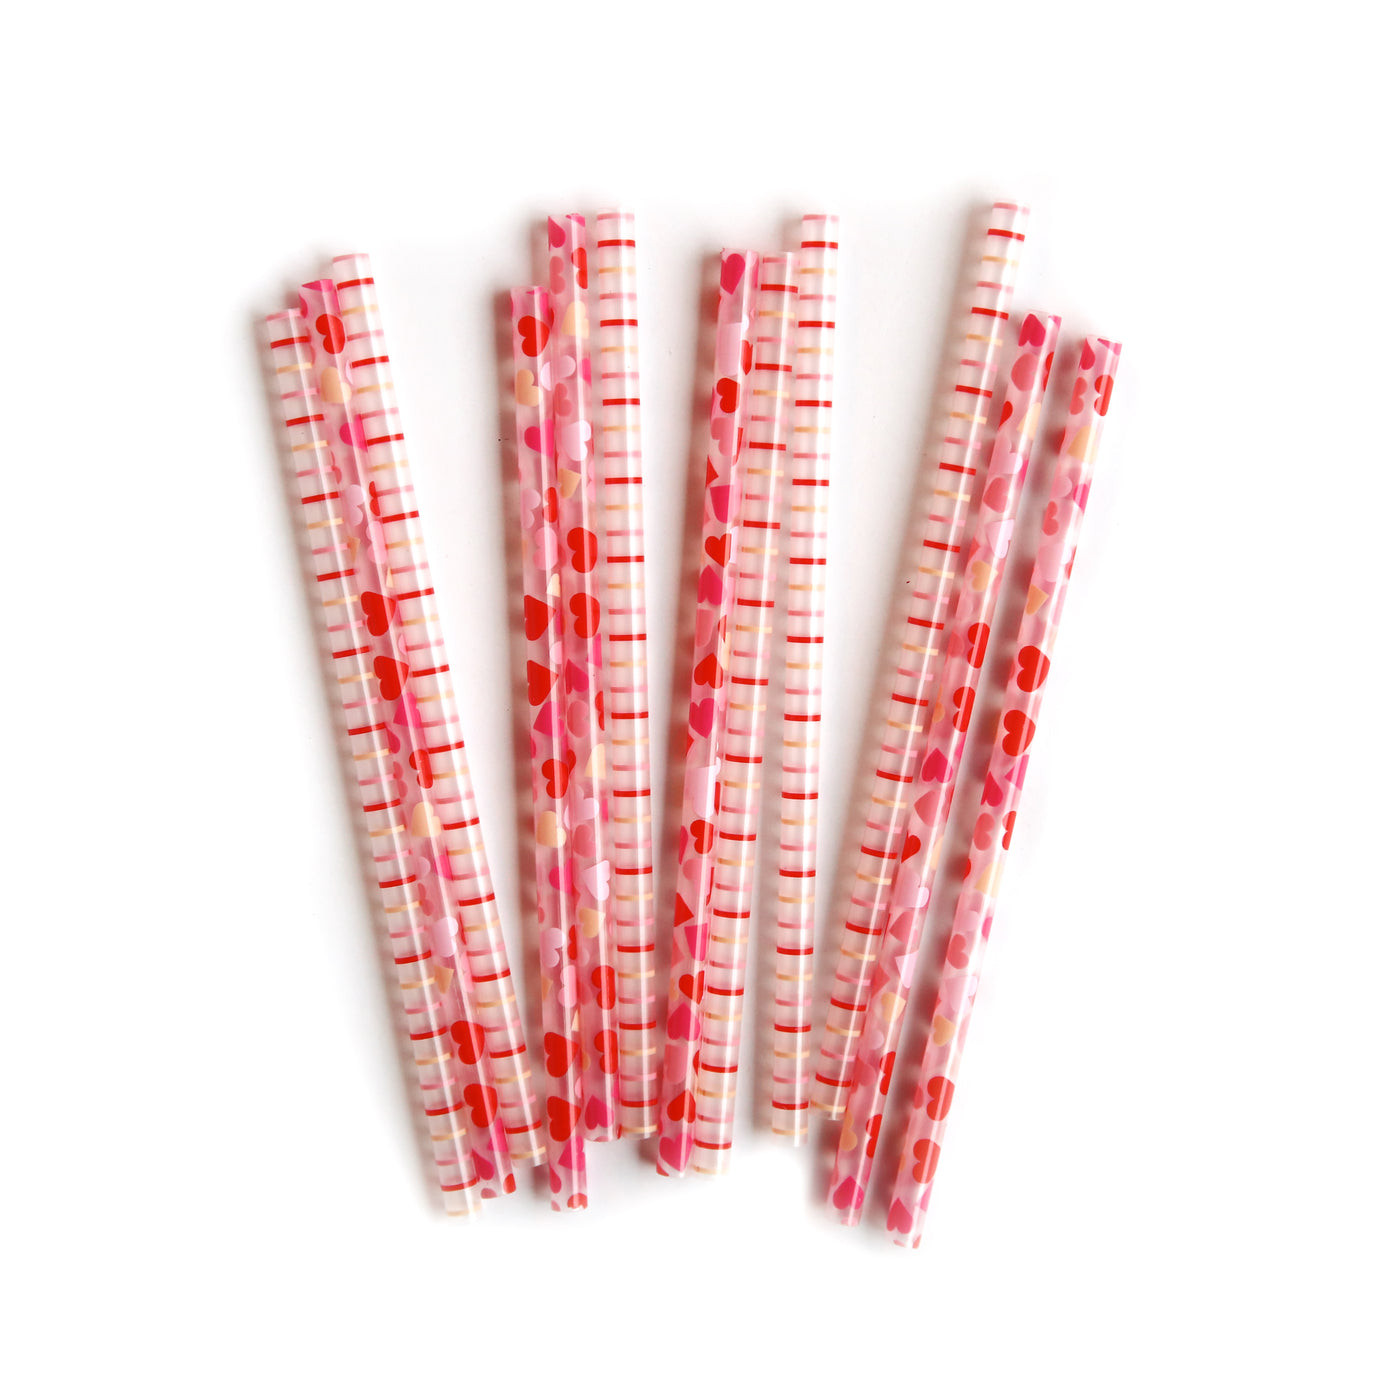 PLSS229 - Pink Stuff Reusable Straws